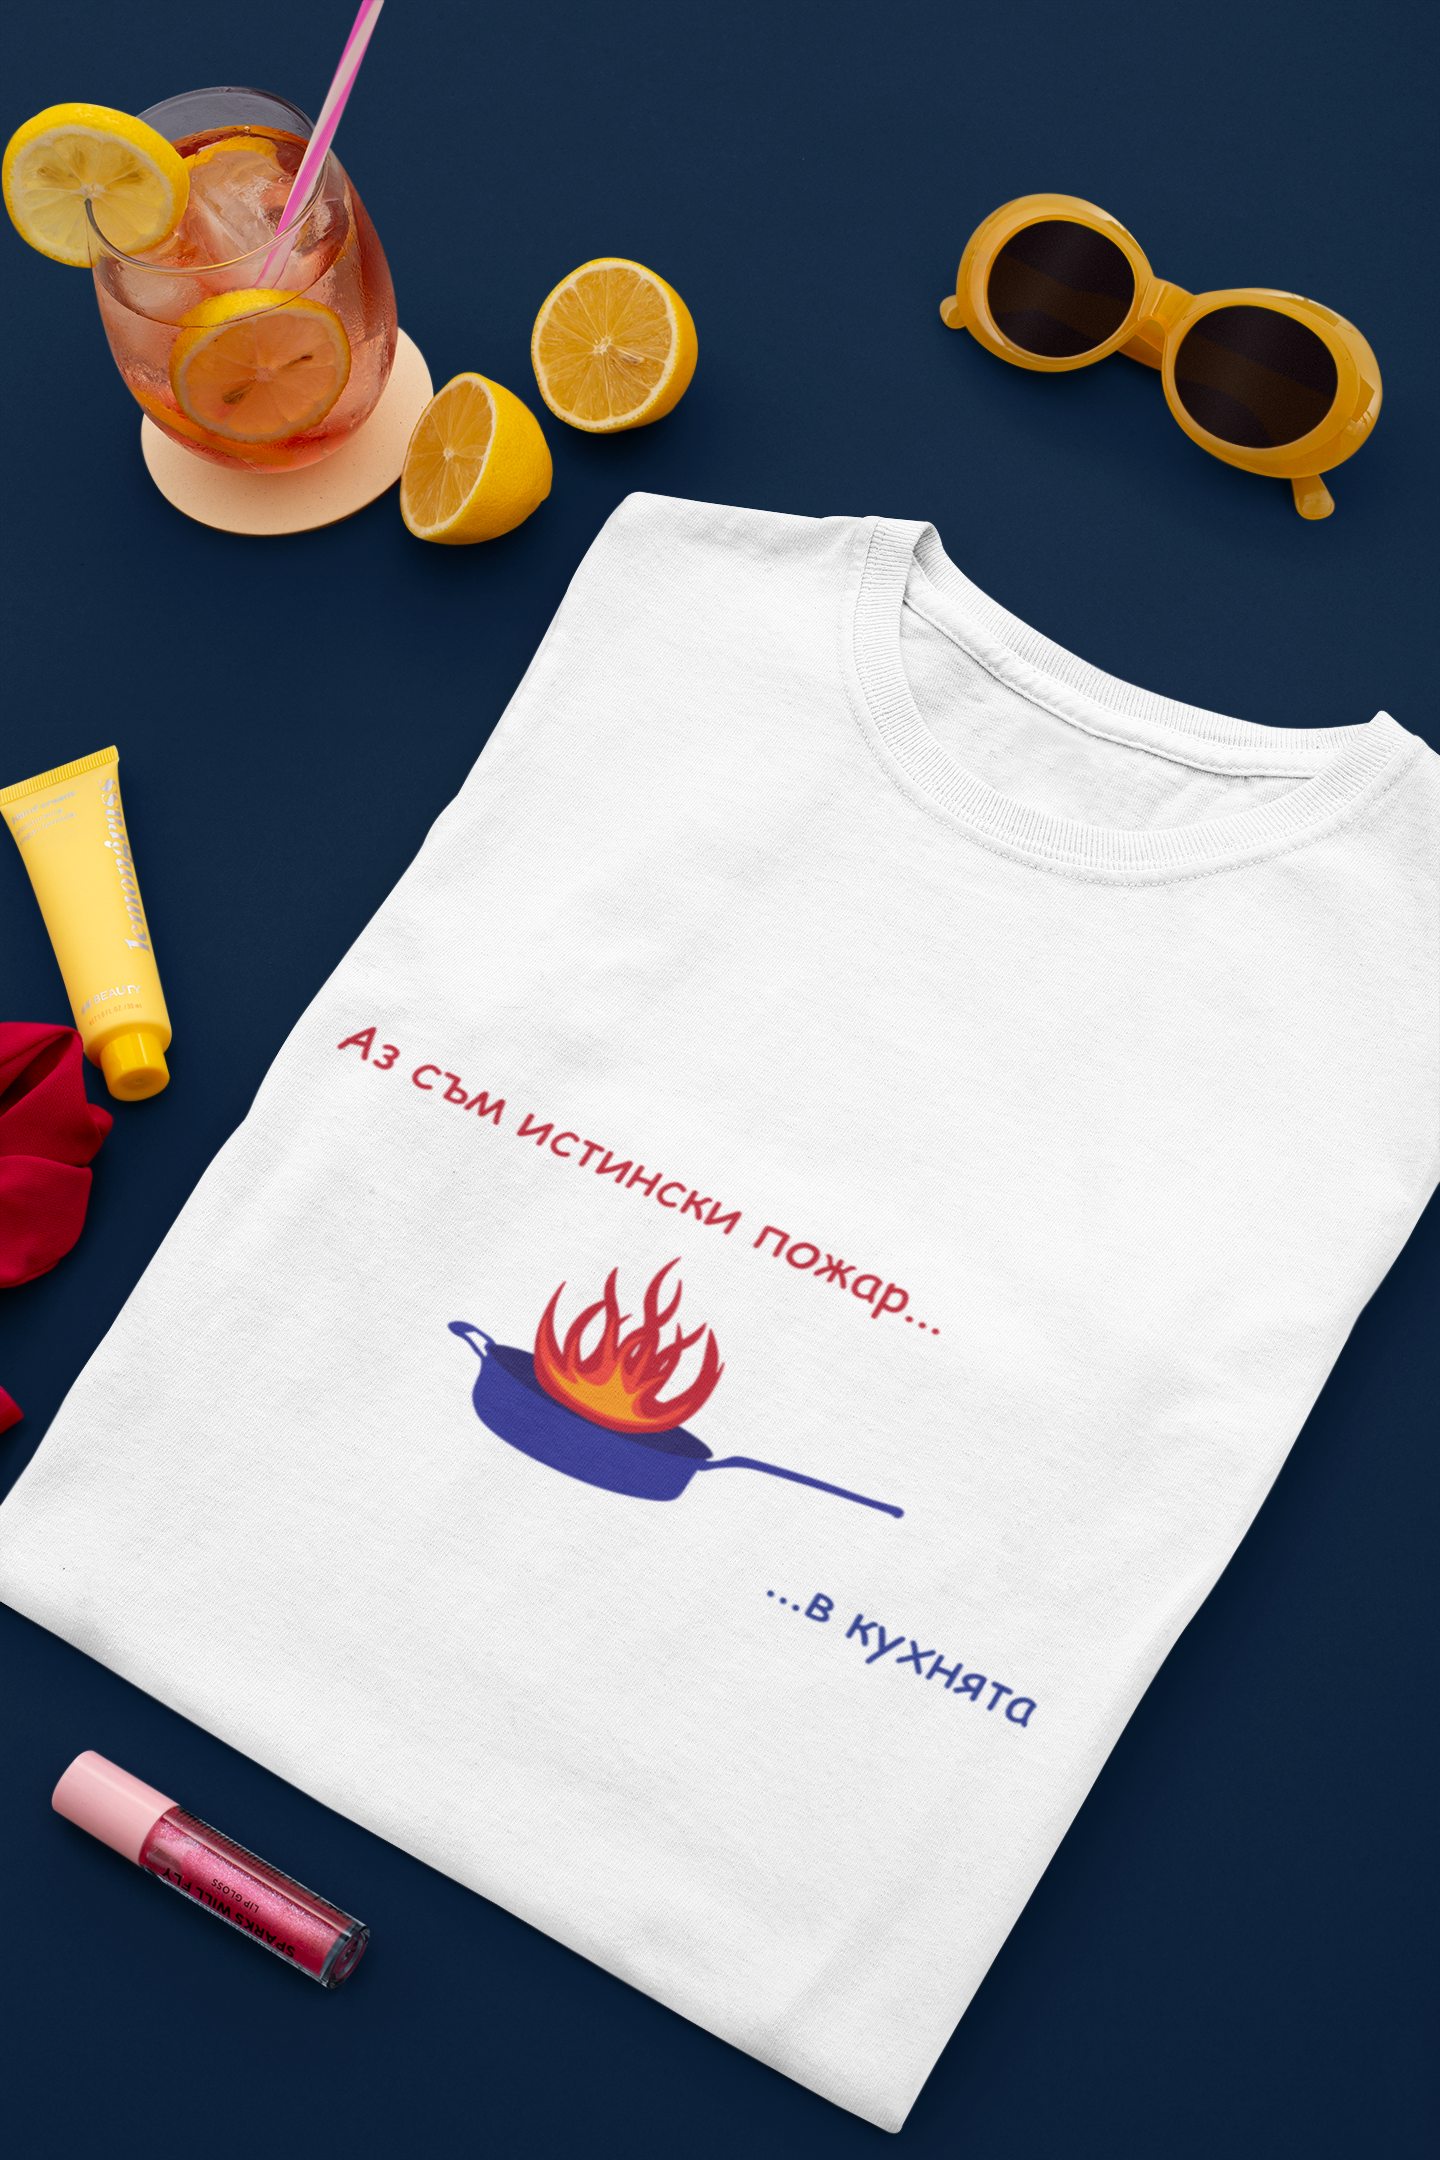 Дамска тениска &quot;Аз съм истински пожар...в кухнята&quot;